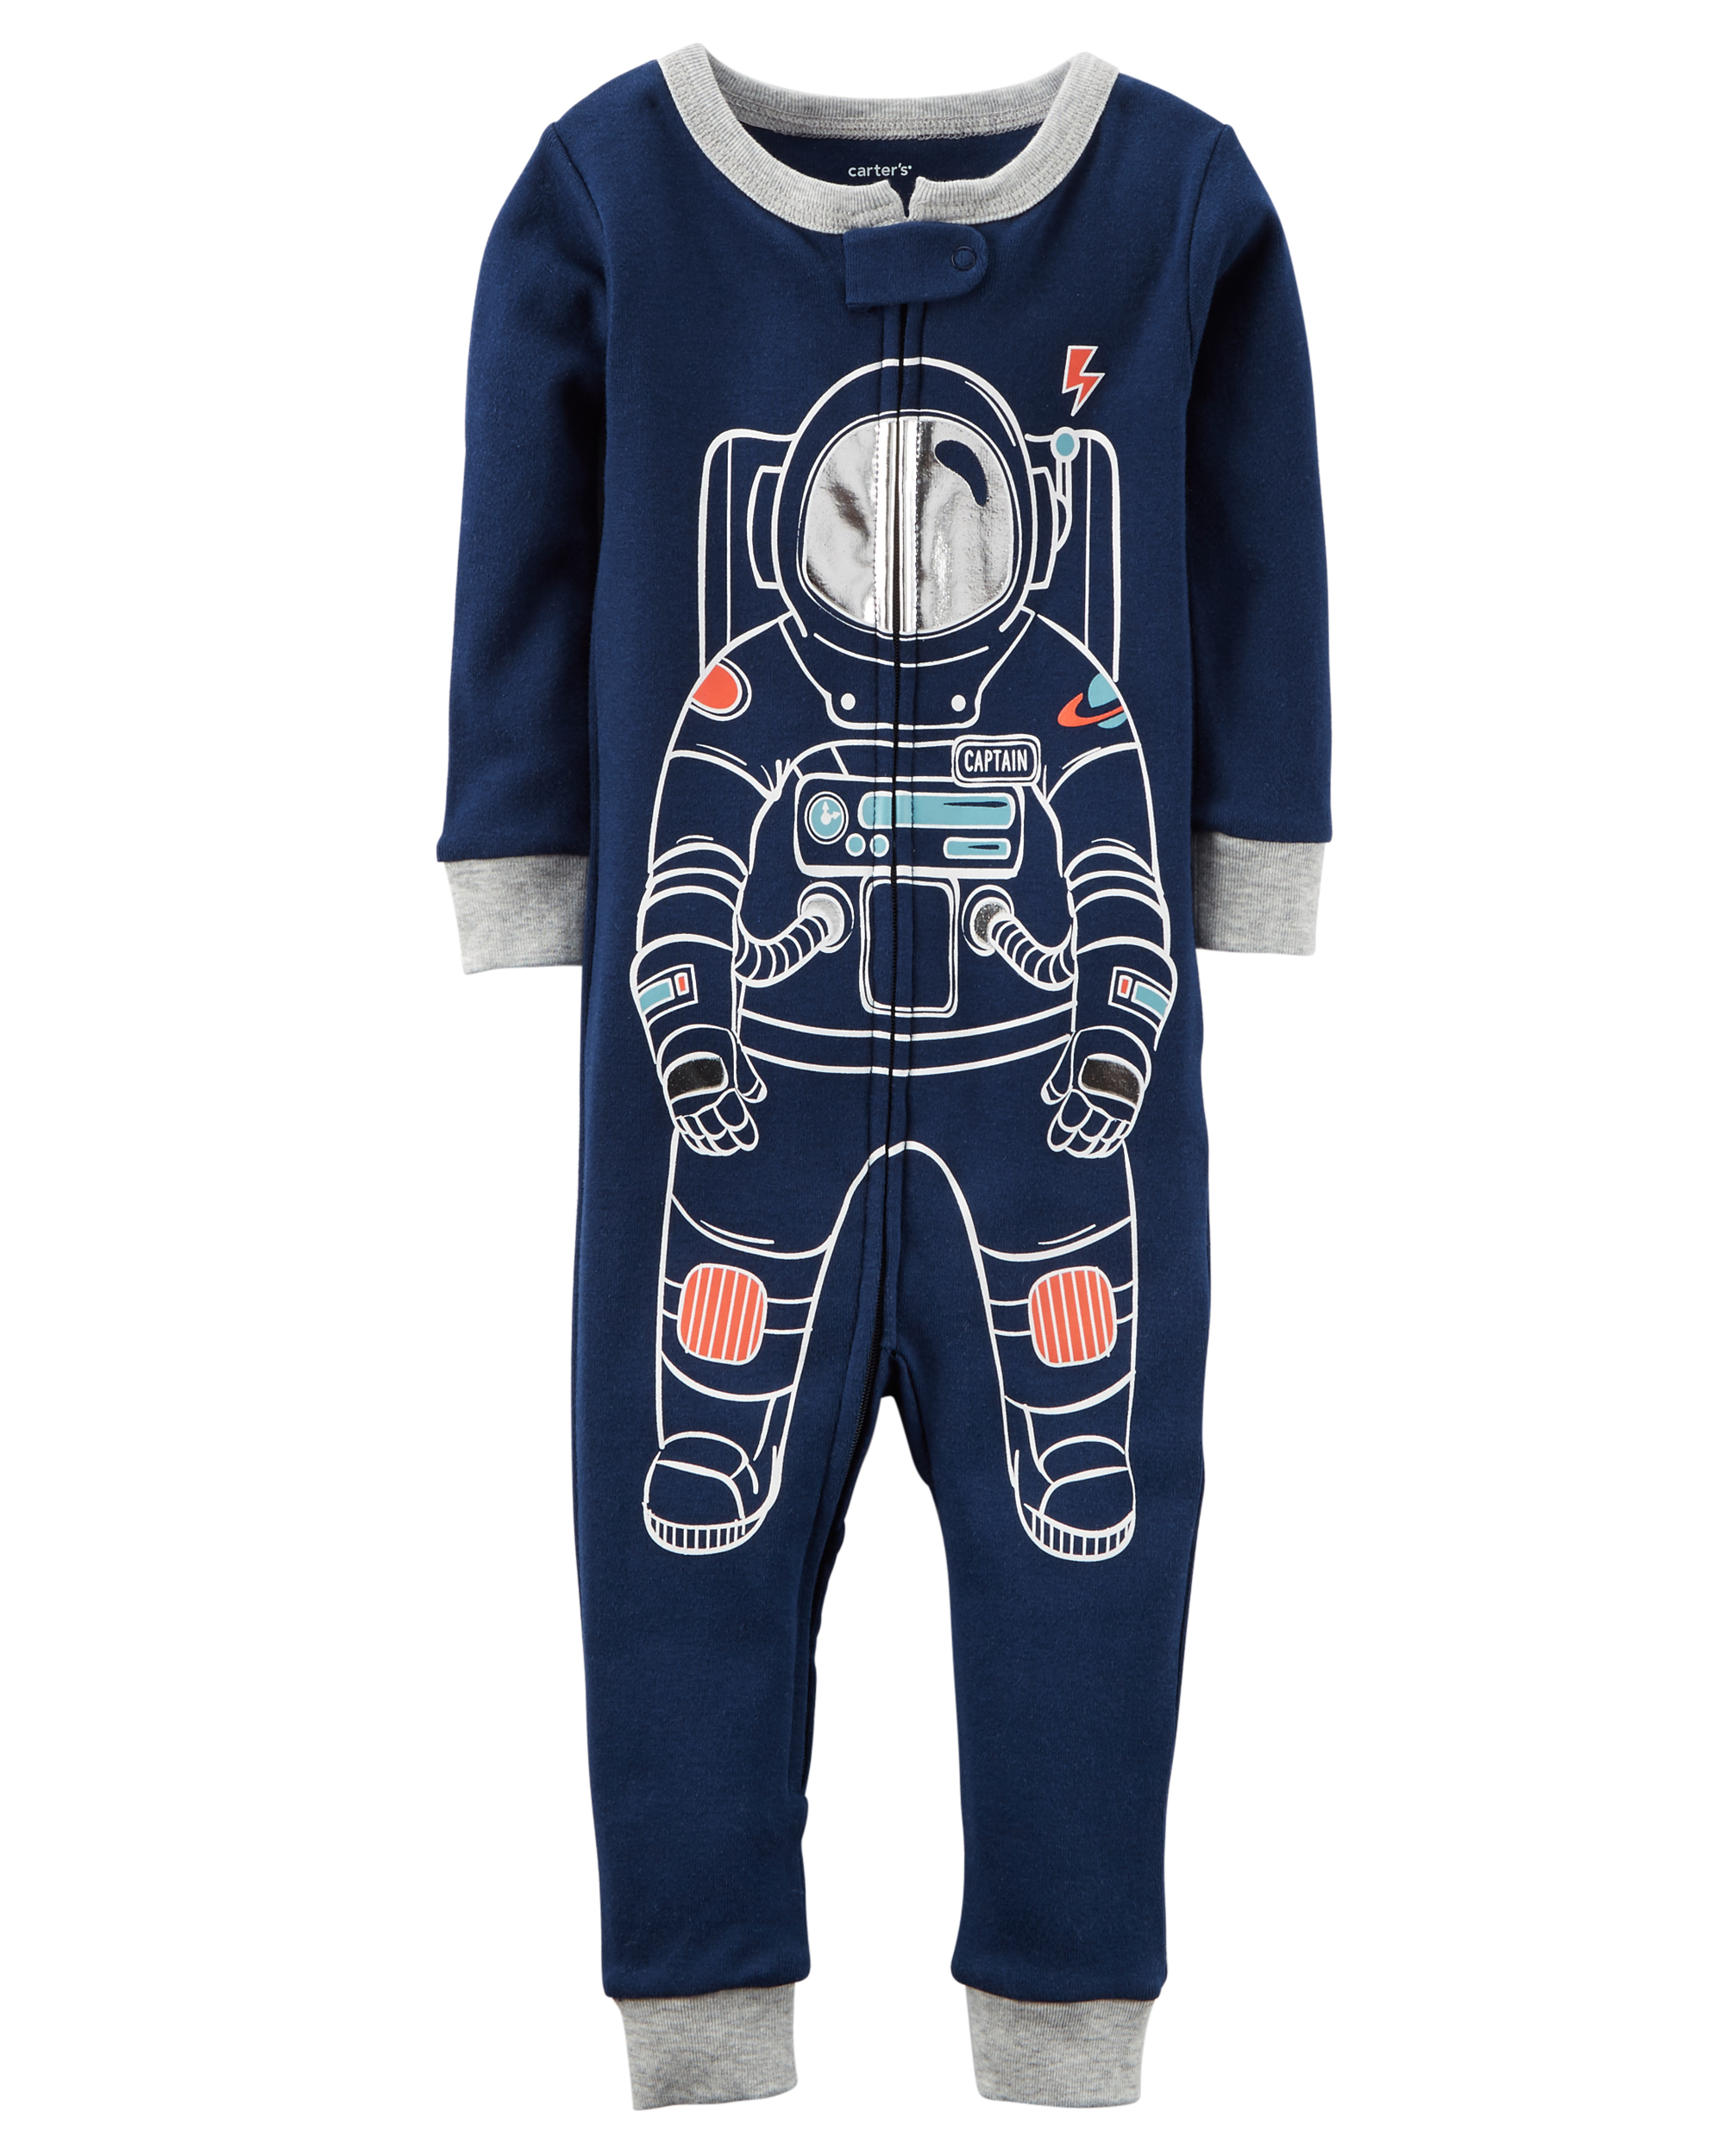 Carters Baby Boys 4 Piece Snug Fit Cotton Pajamas Astronaut